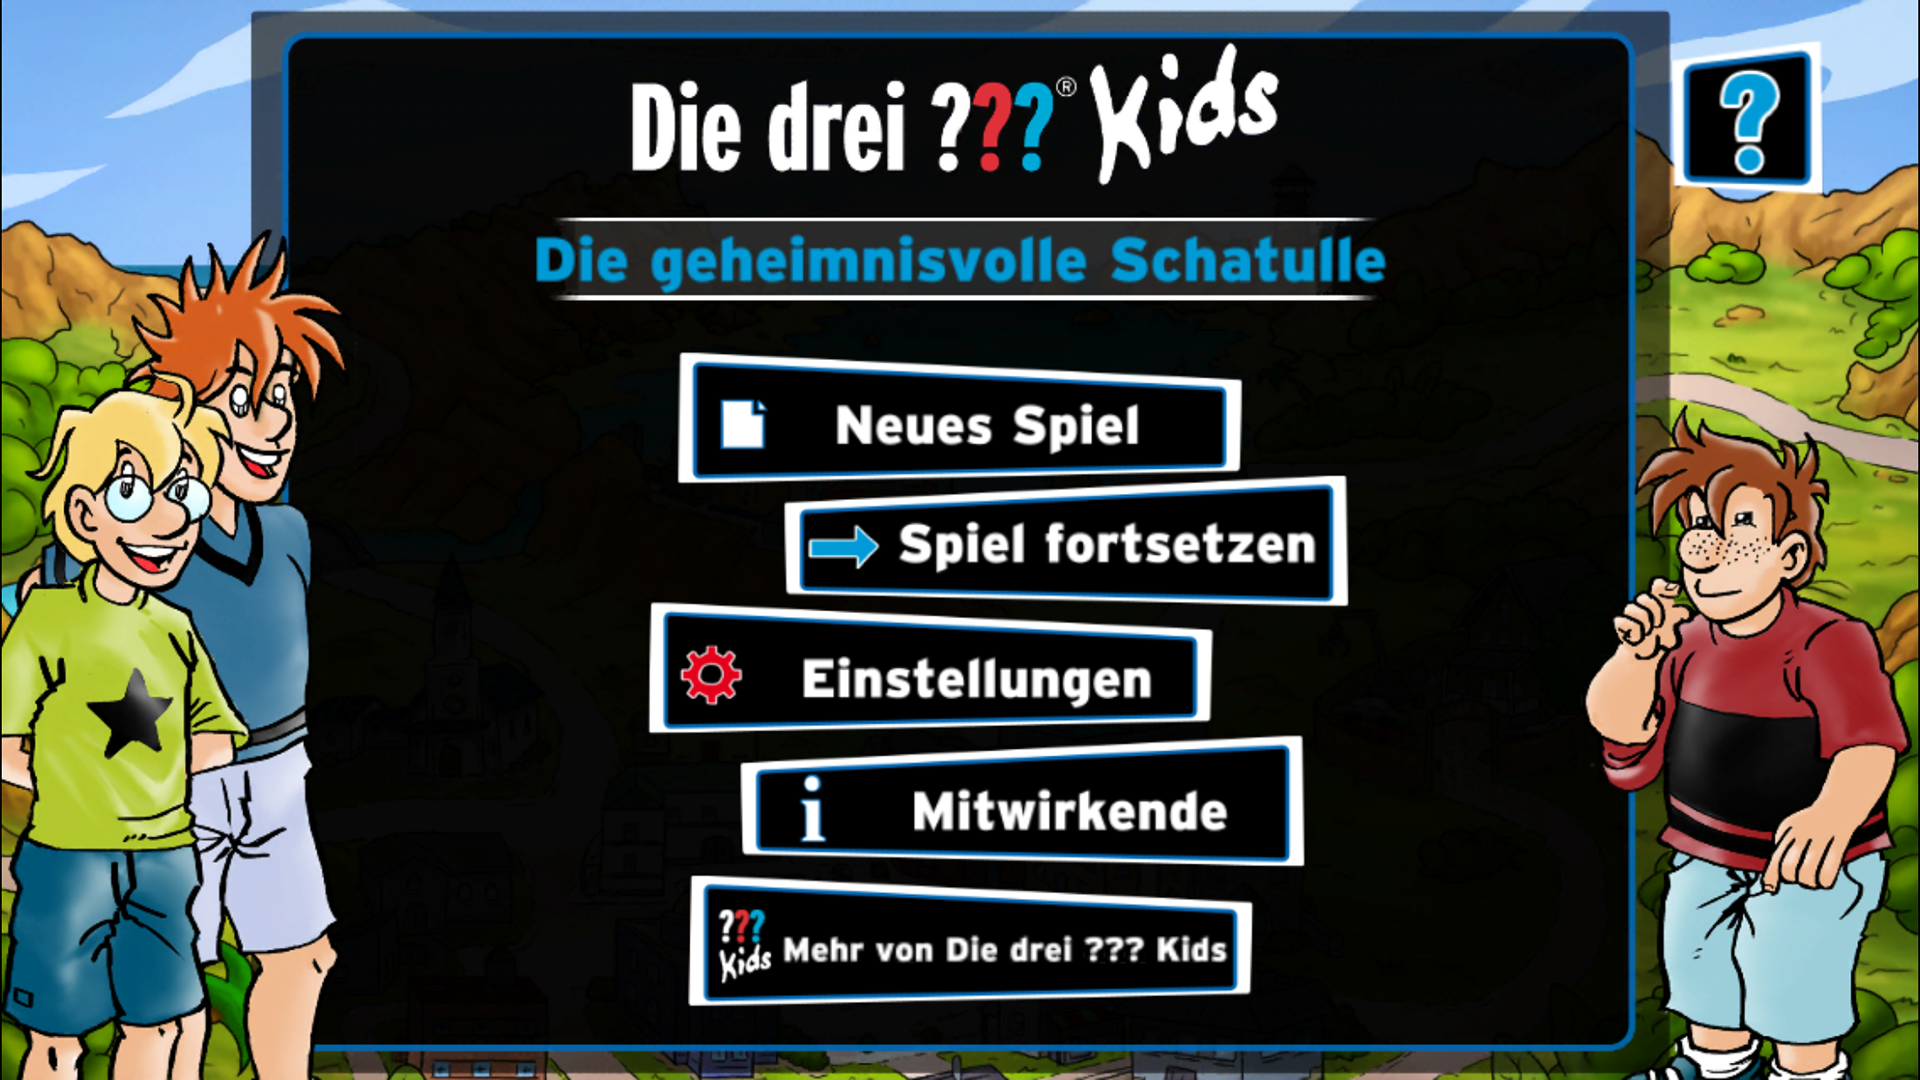 Android application Die drei ??? Kids – Die geheimnisvolle Schatulle screenshort